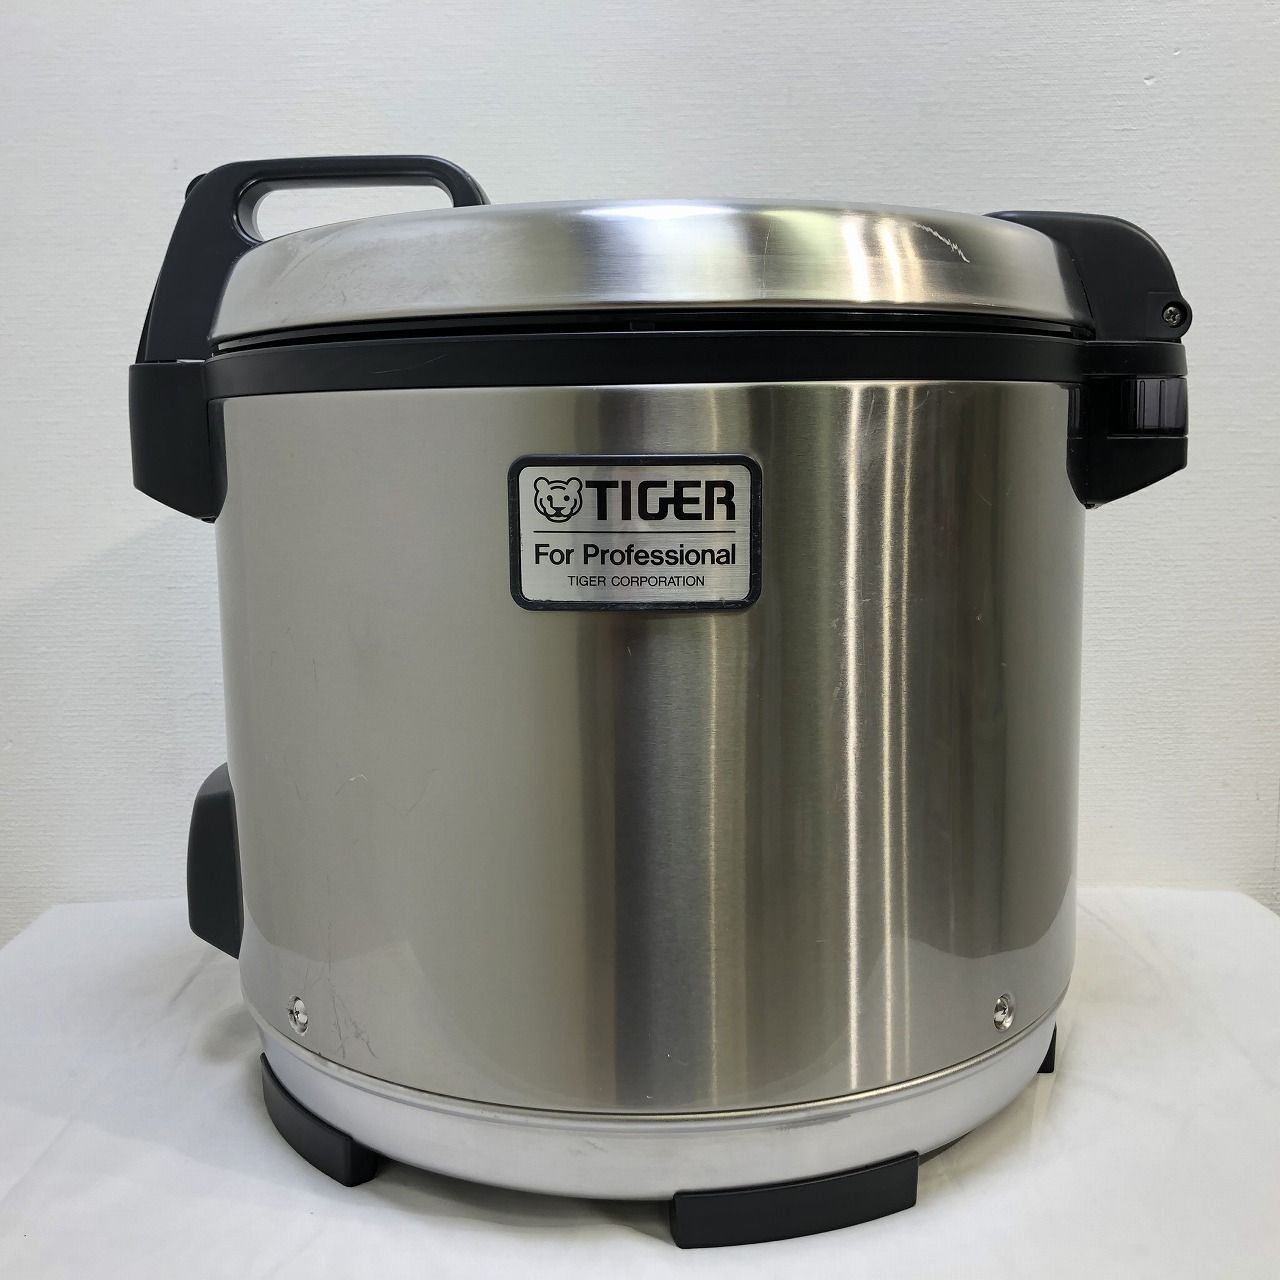 TIGER タイガー 業務用ジャー炊飯器 【炊きたて】 2升炊き JNO-A360 F